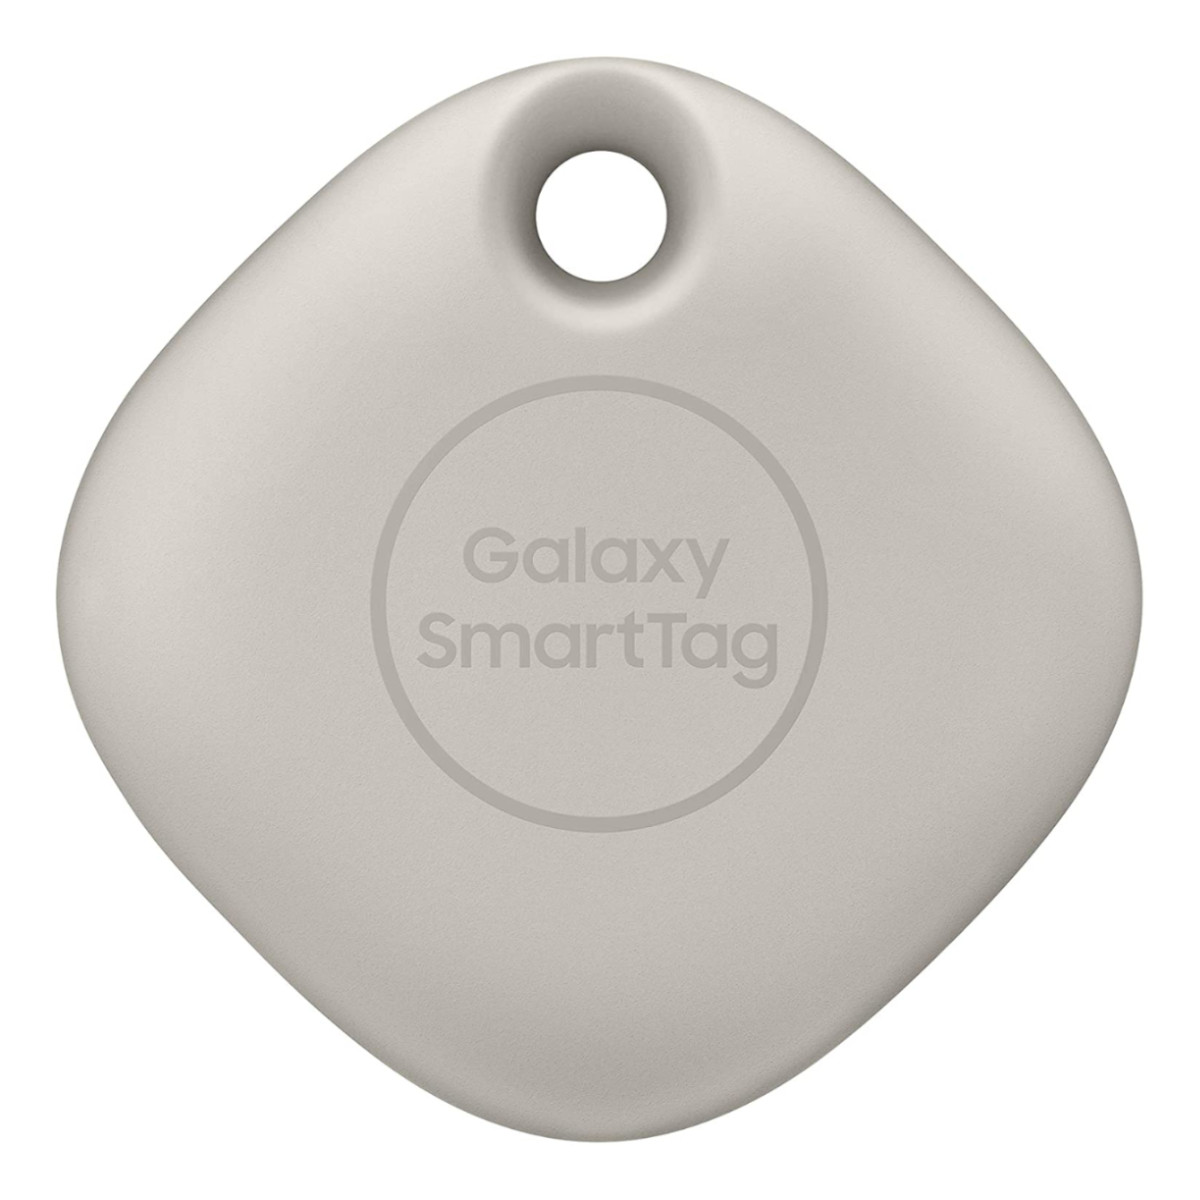 Samsung Smart Tag Localizador Bluetooth Llaves Objetos Avena